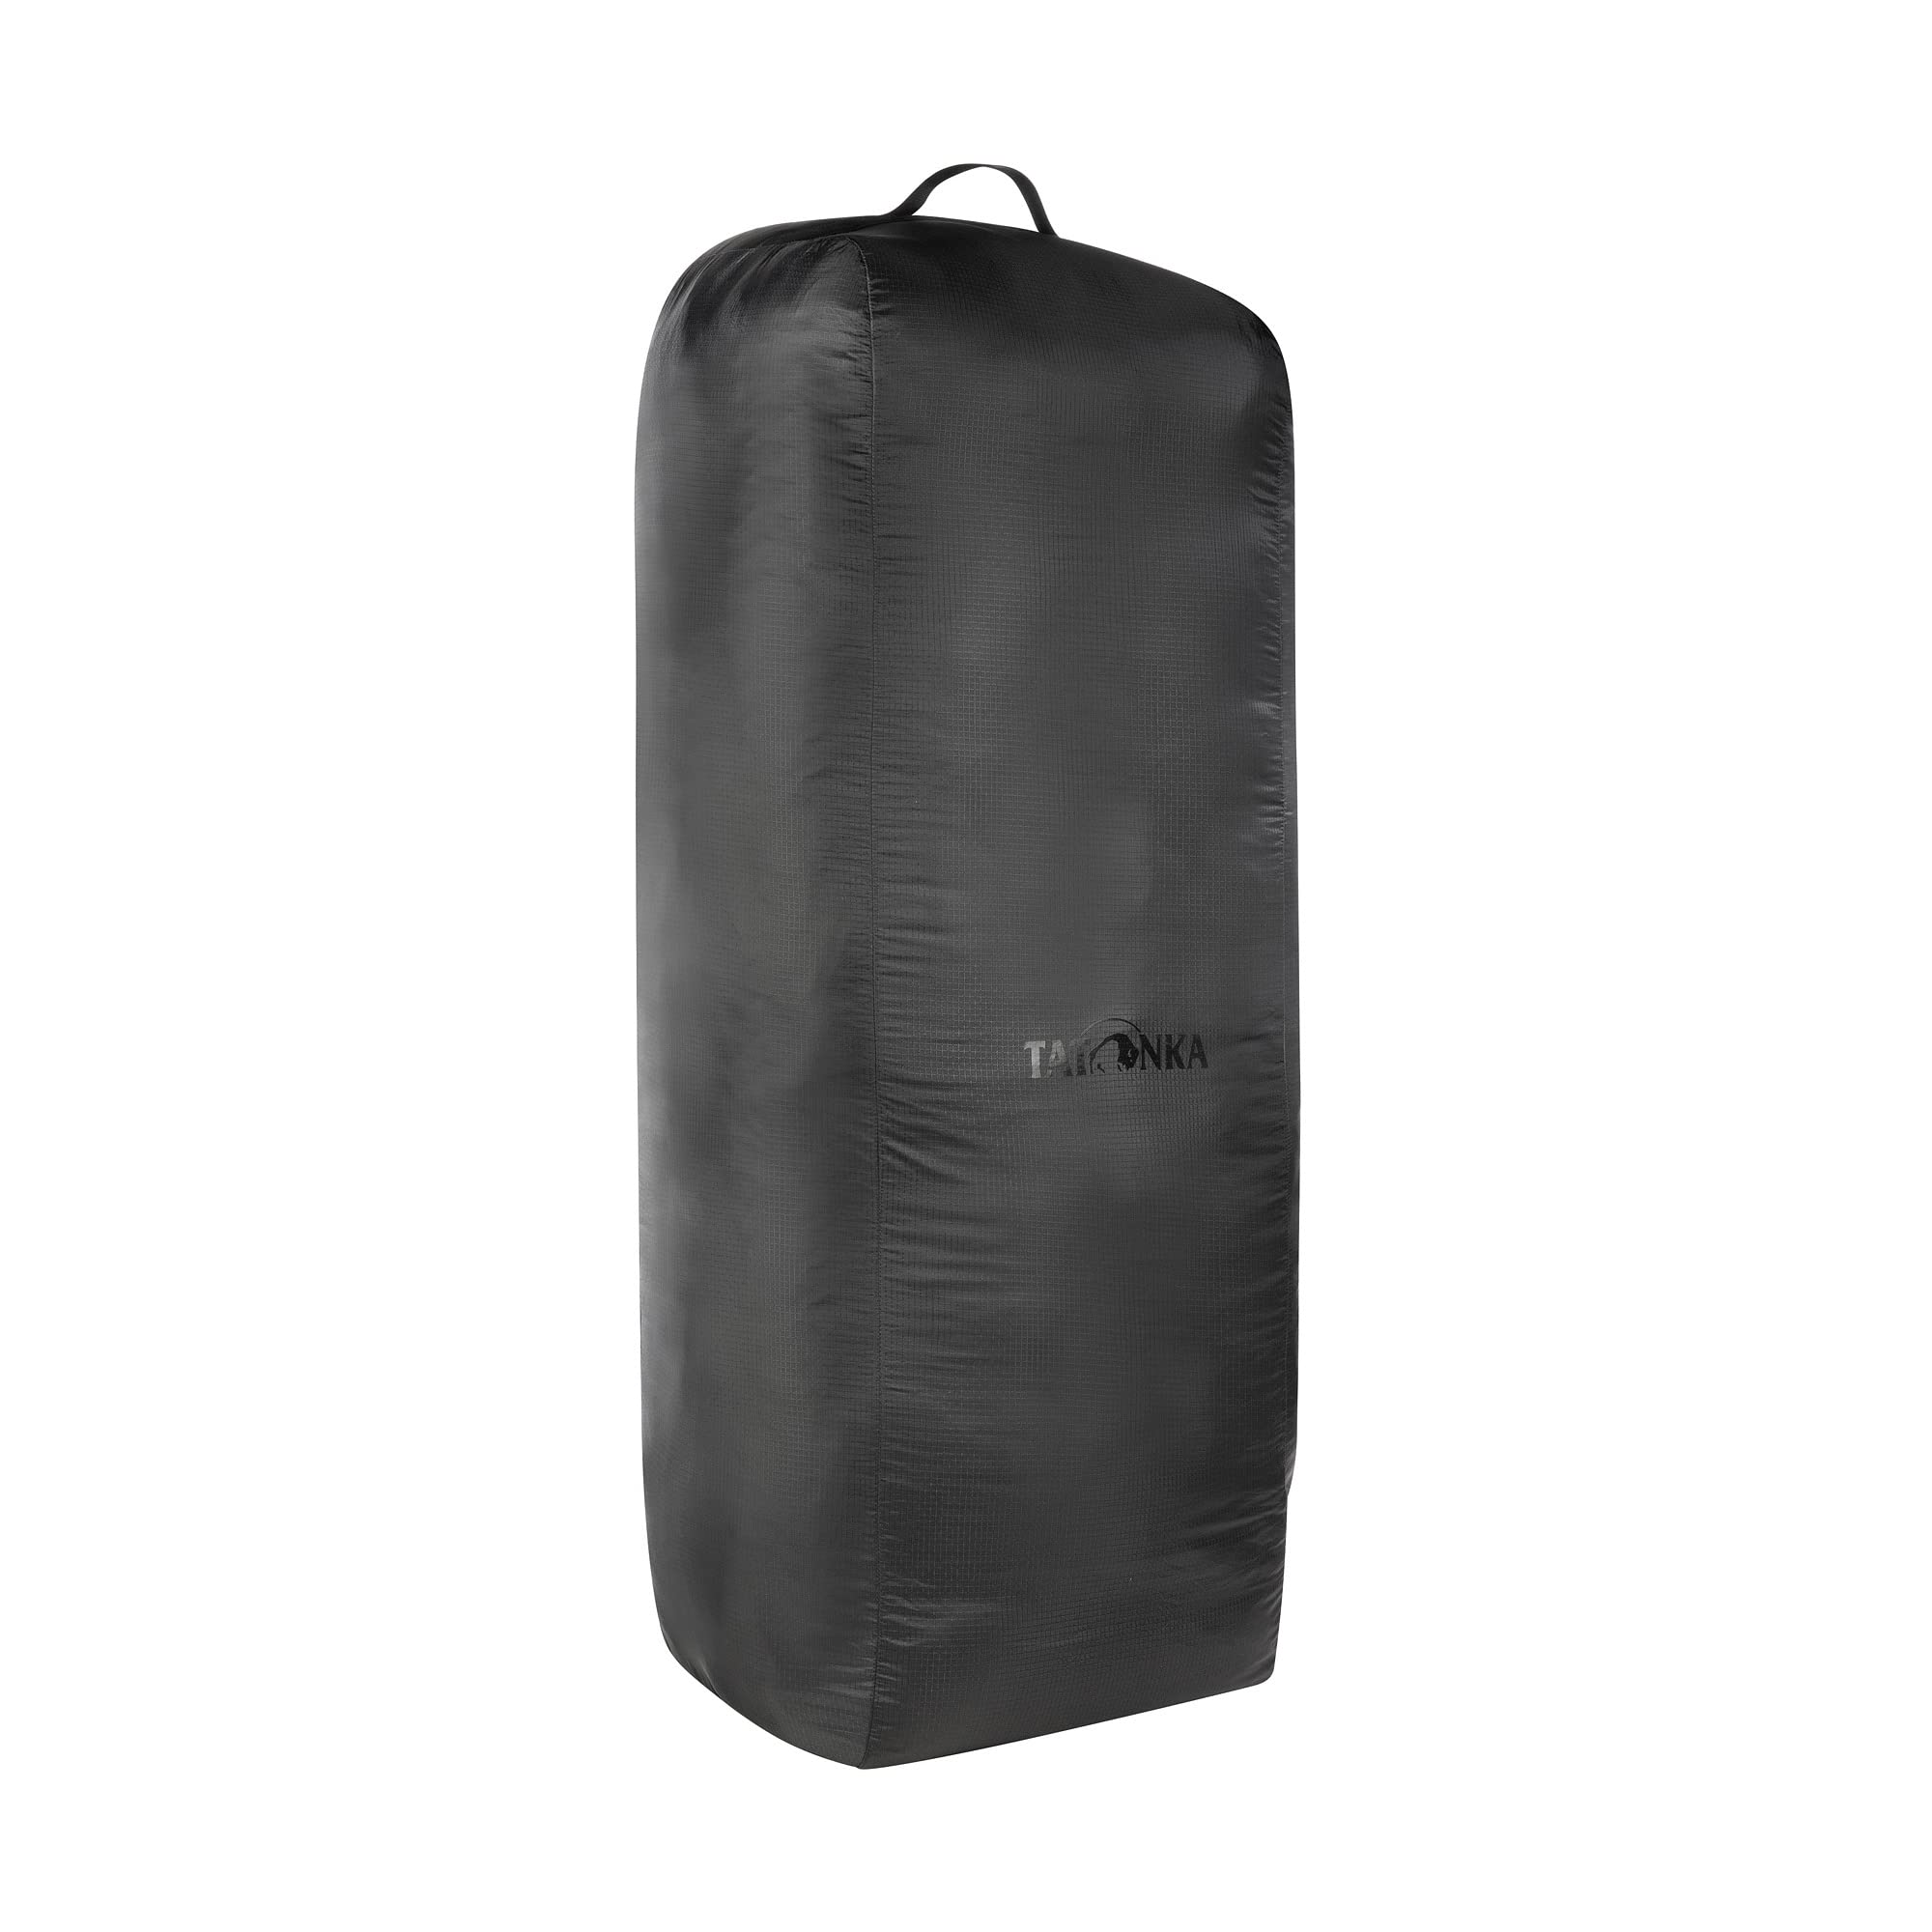 送料無料Tatonka Unisexs Luggage Protector 75 L Backpack Protective Bag Black 65-80 l並行輸入品